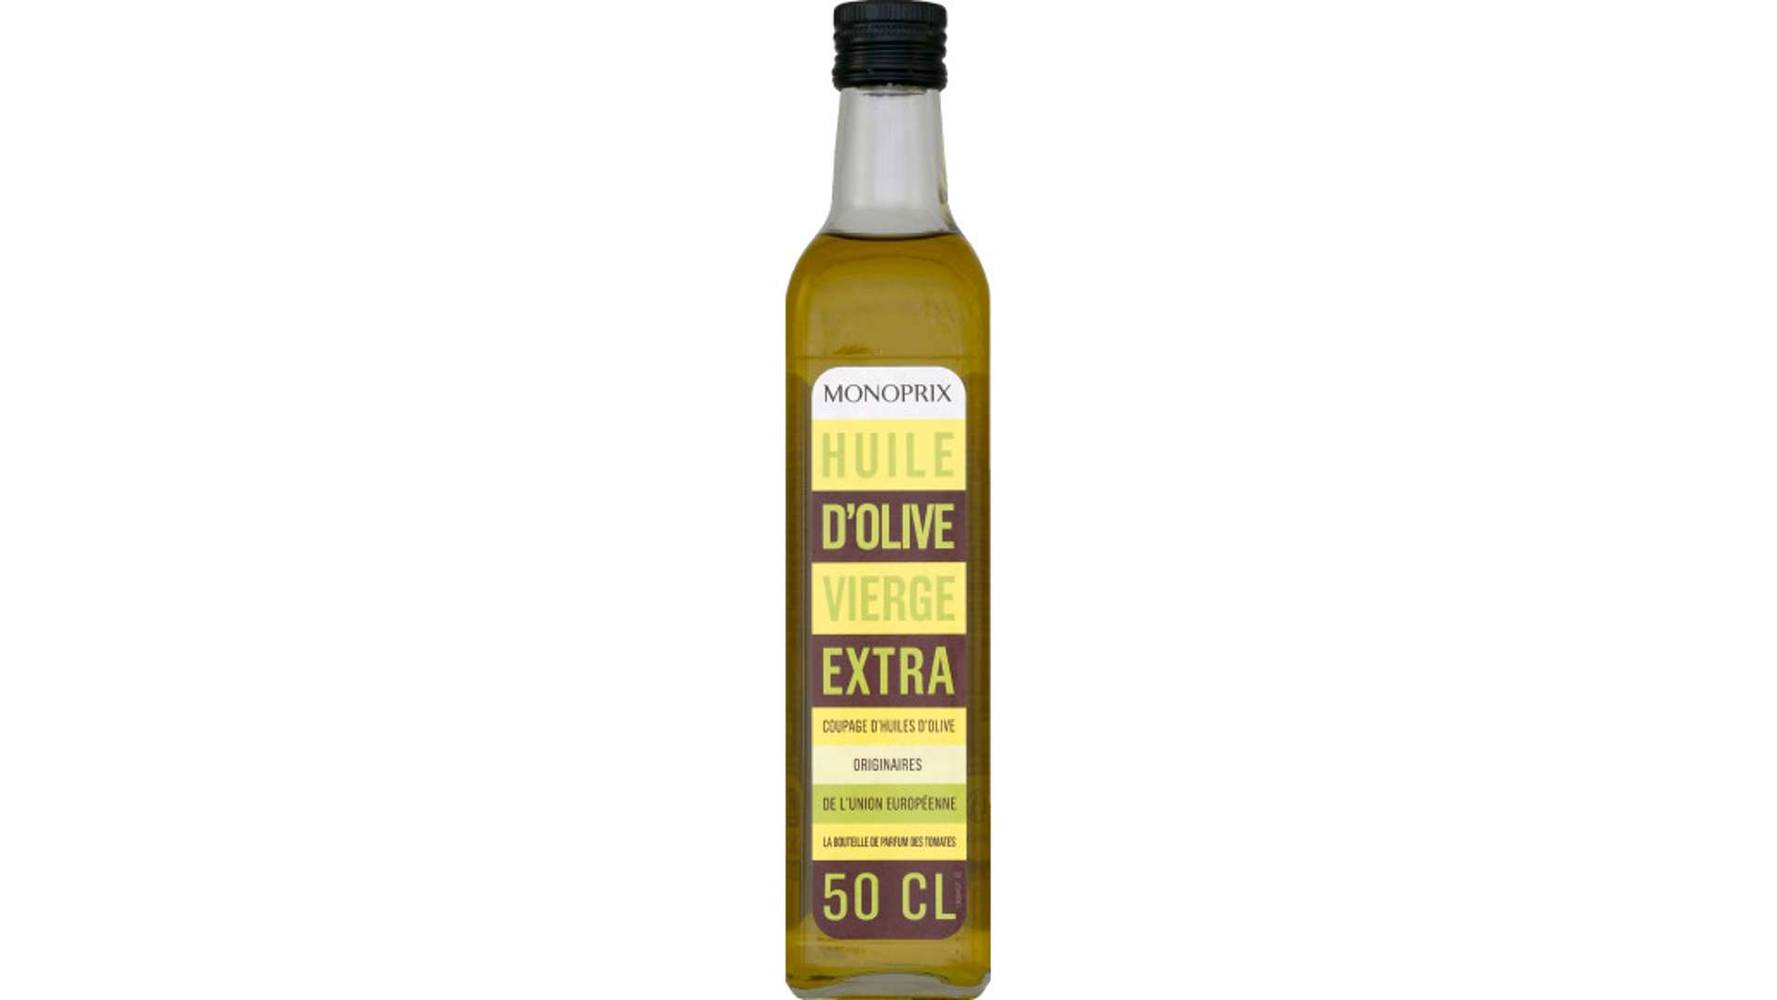 Monoprix Huile d'olive vierge extra La bouteille de 50 cl